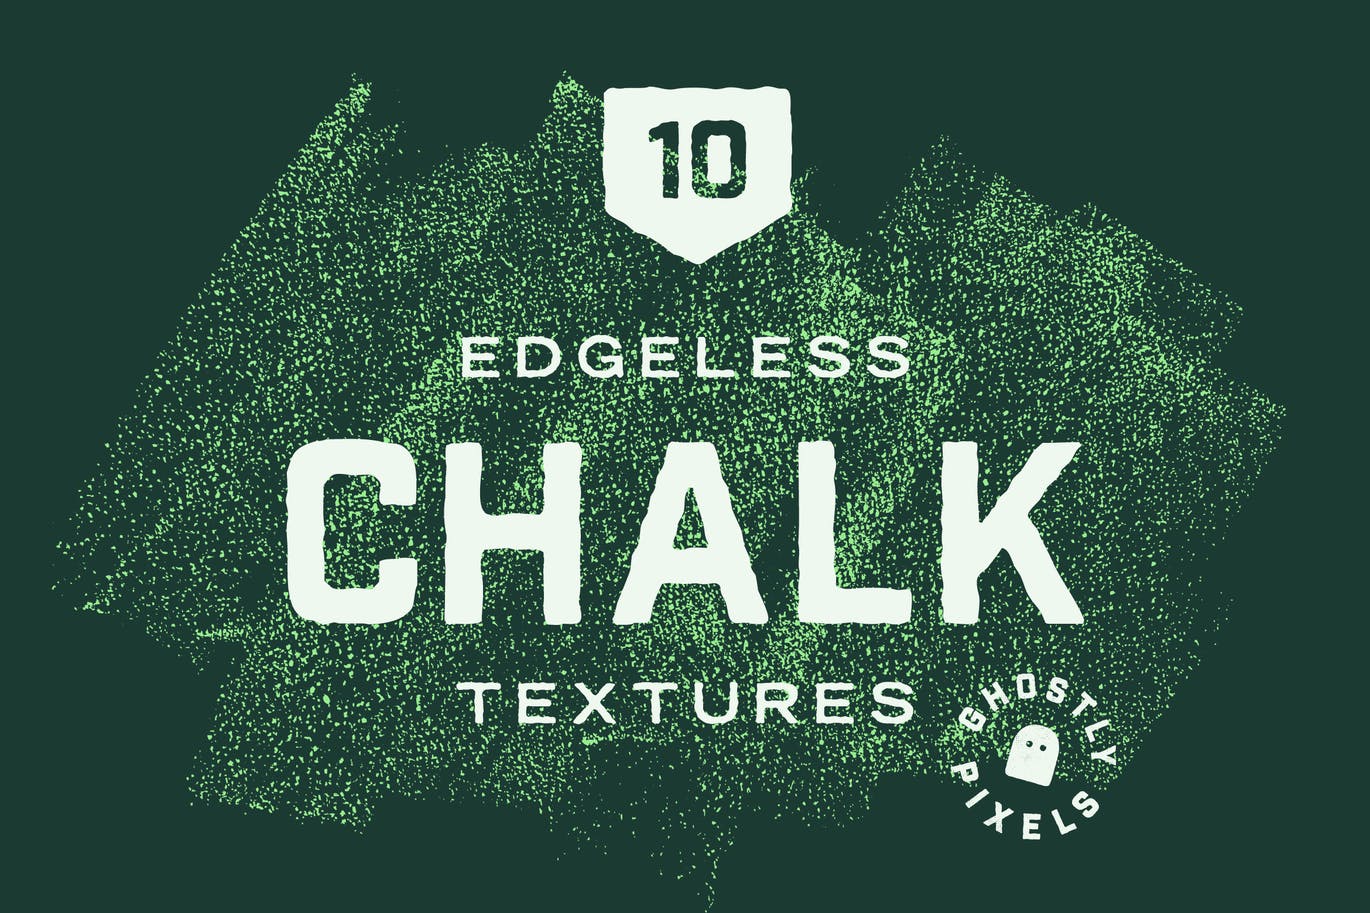 无边粉笔纹理精美系列 Edgeless Chalk Textures 图片素材 第1张